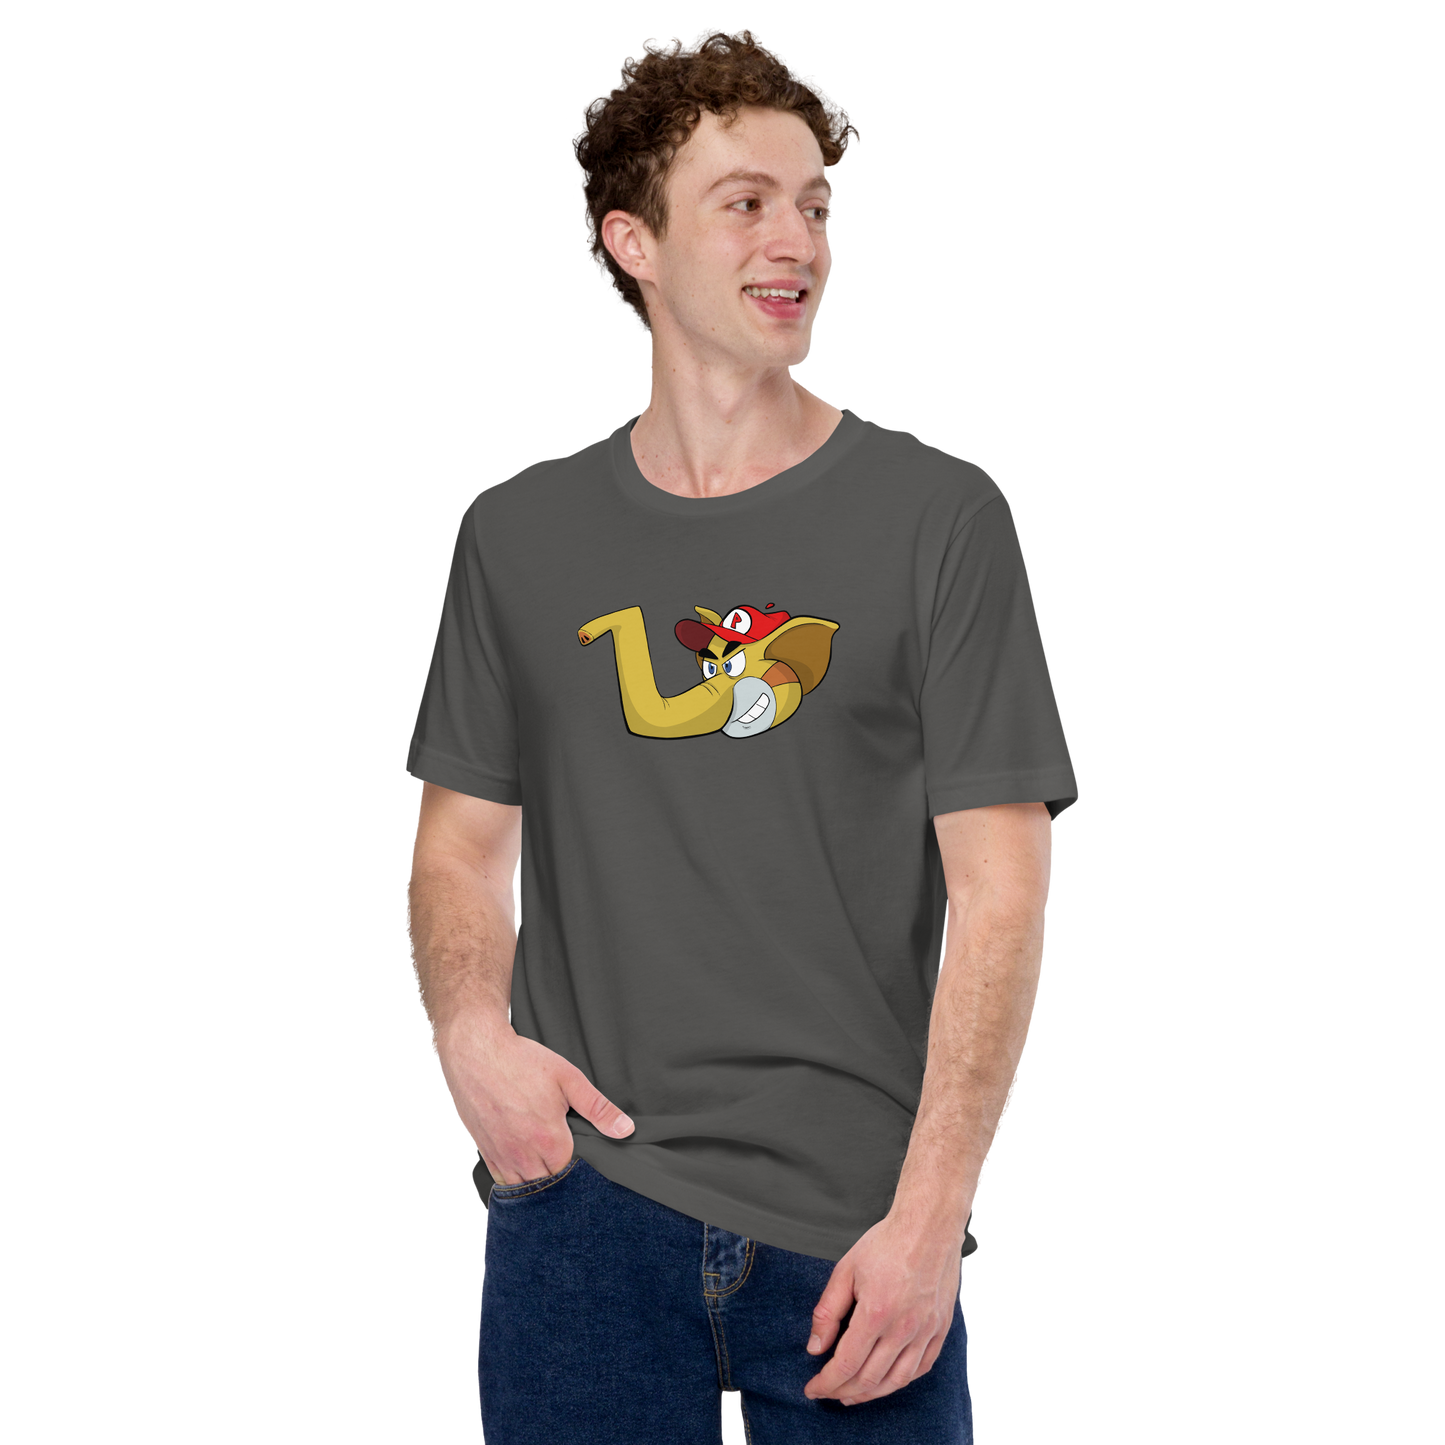 pooElephant T-Shirt